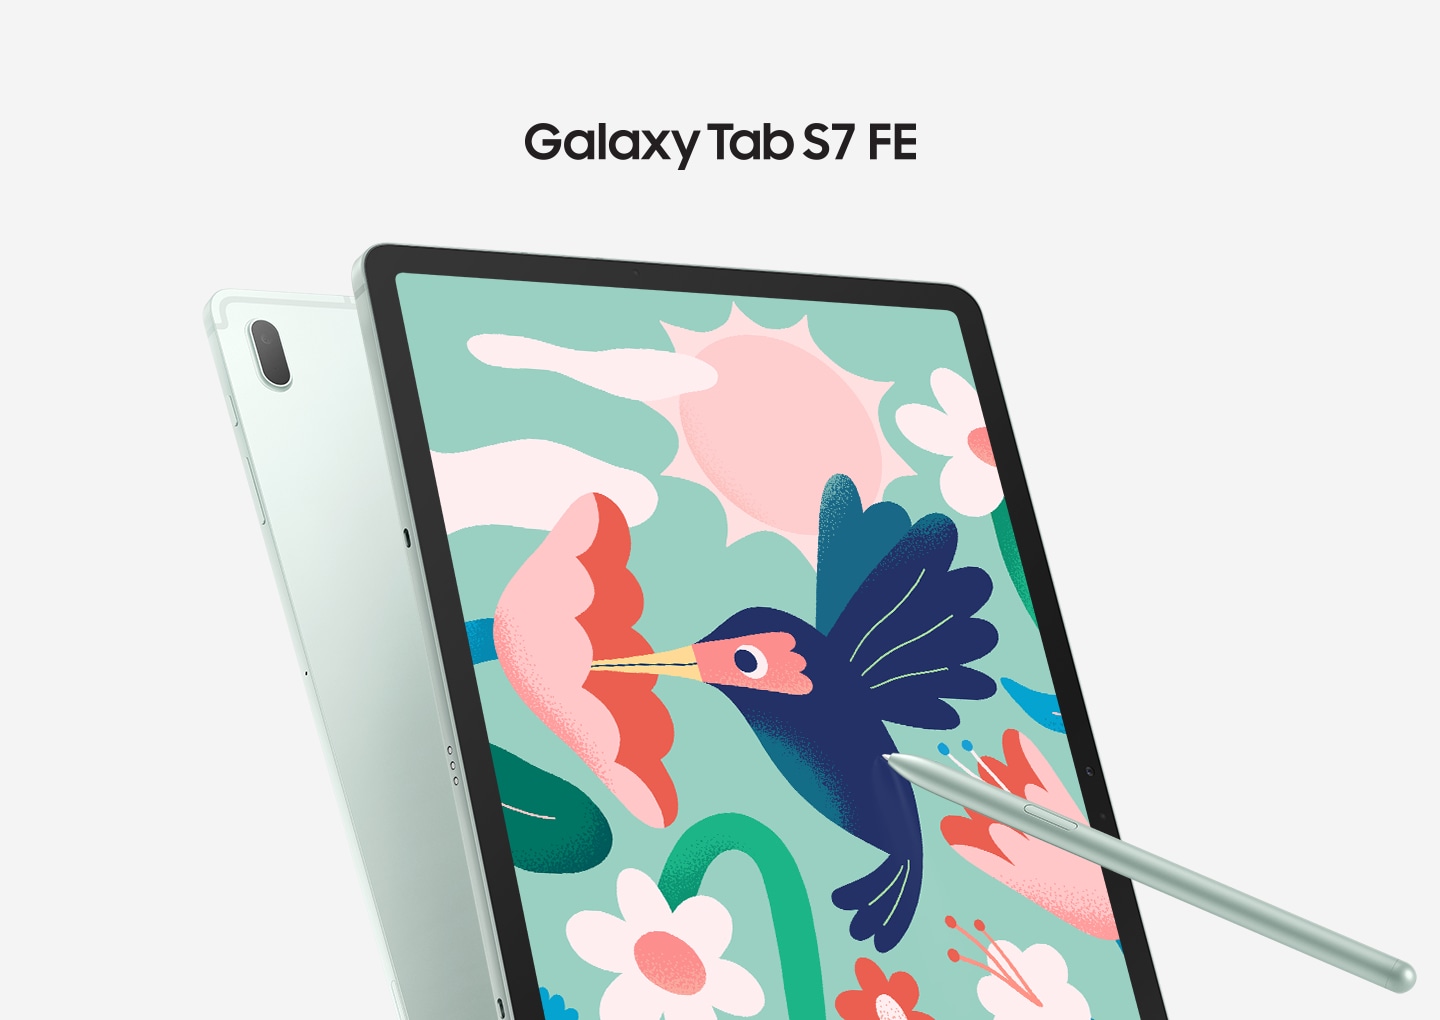 Samsung Galaxy Tab S7 FE là một trong những sản phẩm đáng chú ý của hãng về thiết kế, hiệu năng và tính năng đa dạng. Trong đó, tính năng vẽ và sử dụng bút cảm ứng được nâng cấp sẽ mang đến trải nghiệm tuyệt vời cho người dùng. Hãy khám phá những tác phẩm tuyệt đẹp được vẽ trên Tab S7 FE.